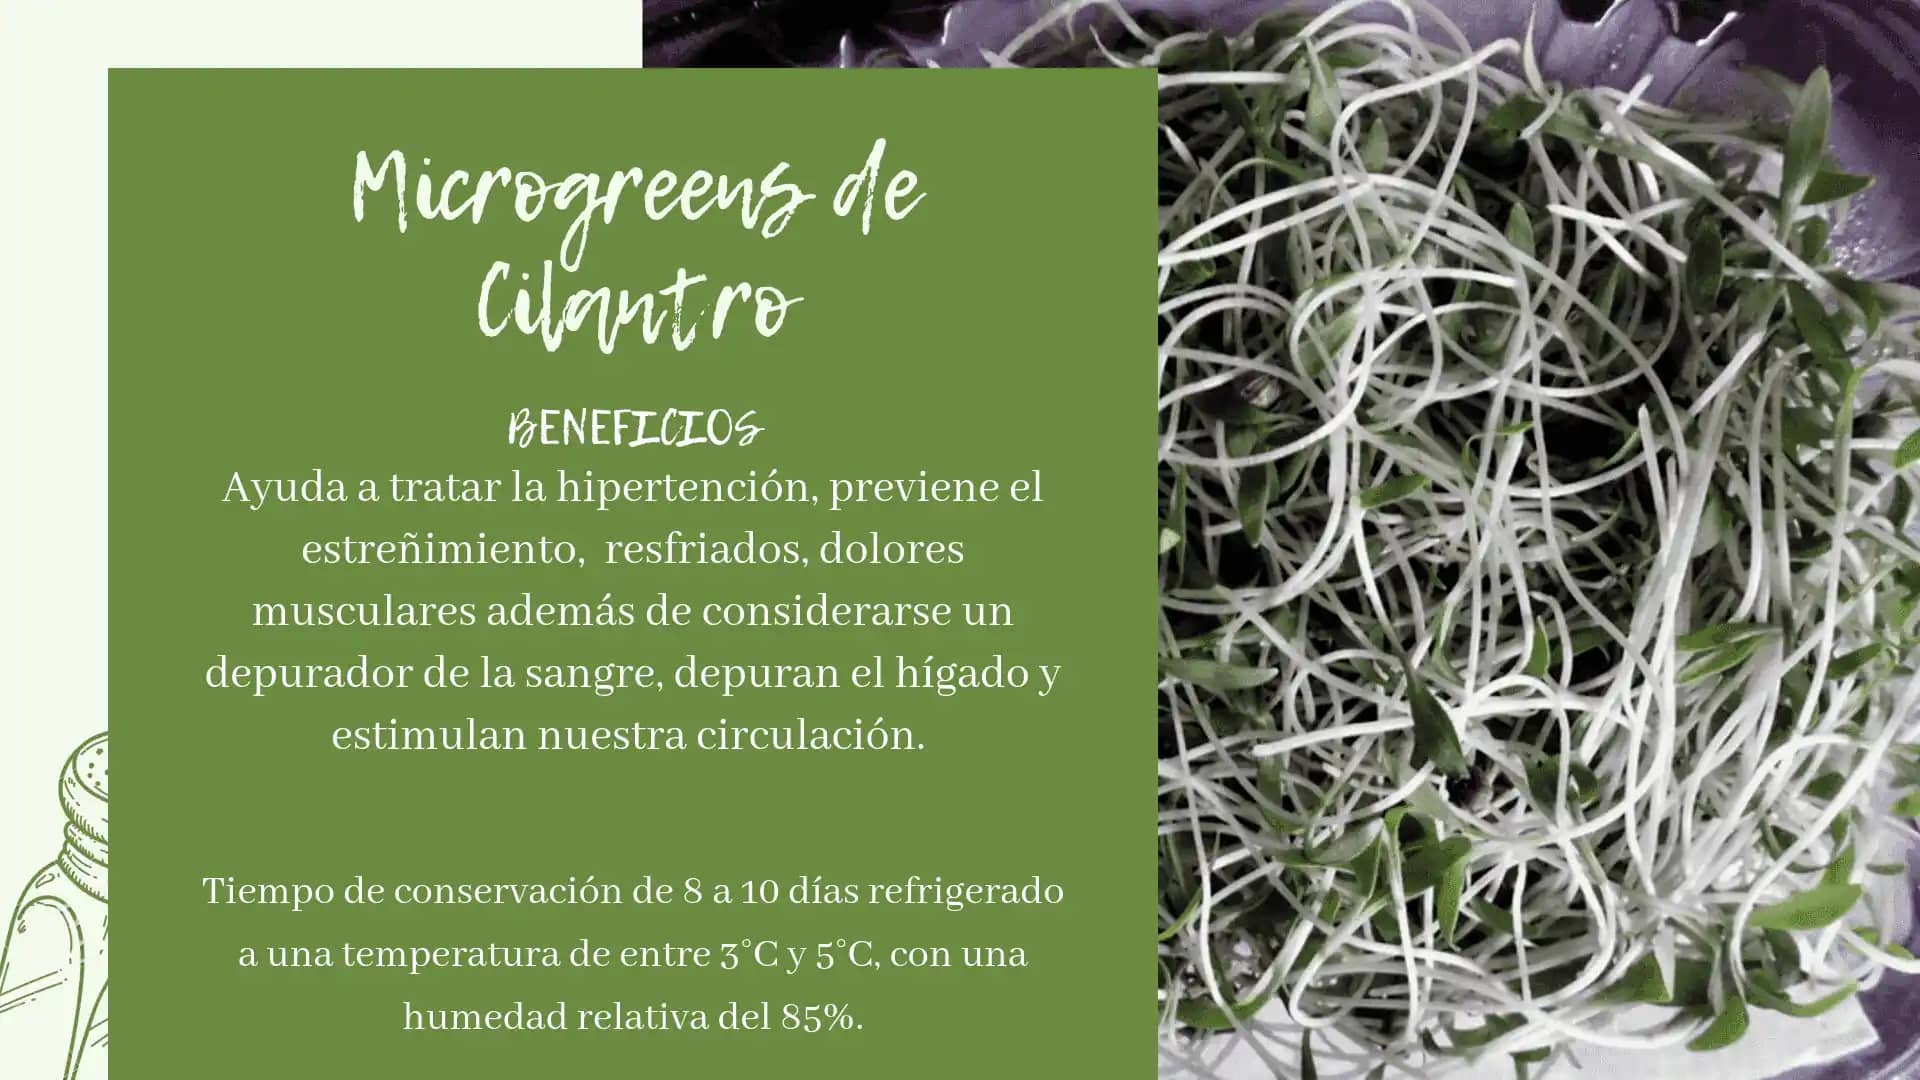 Microgerminado de cilantro - Microgreens y germinados BFUE